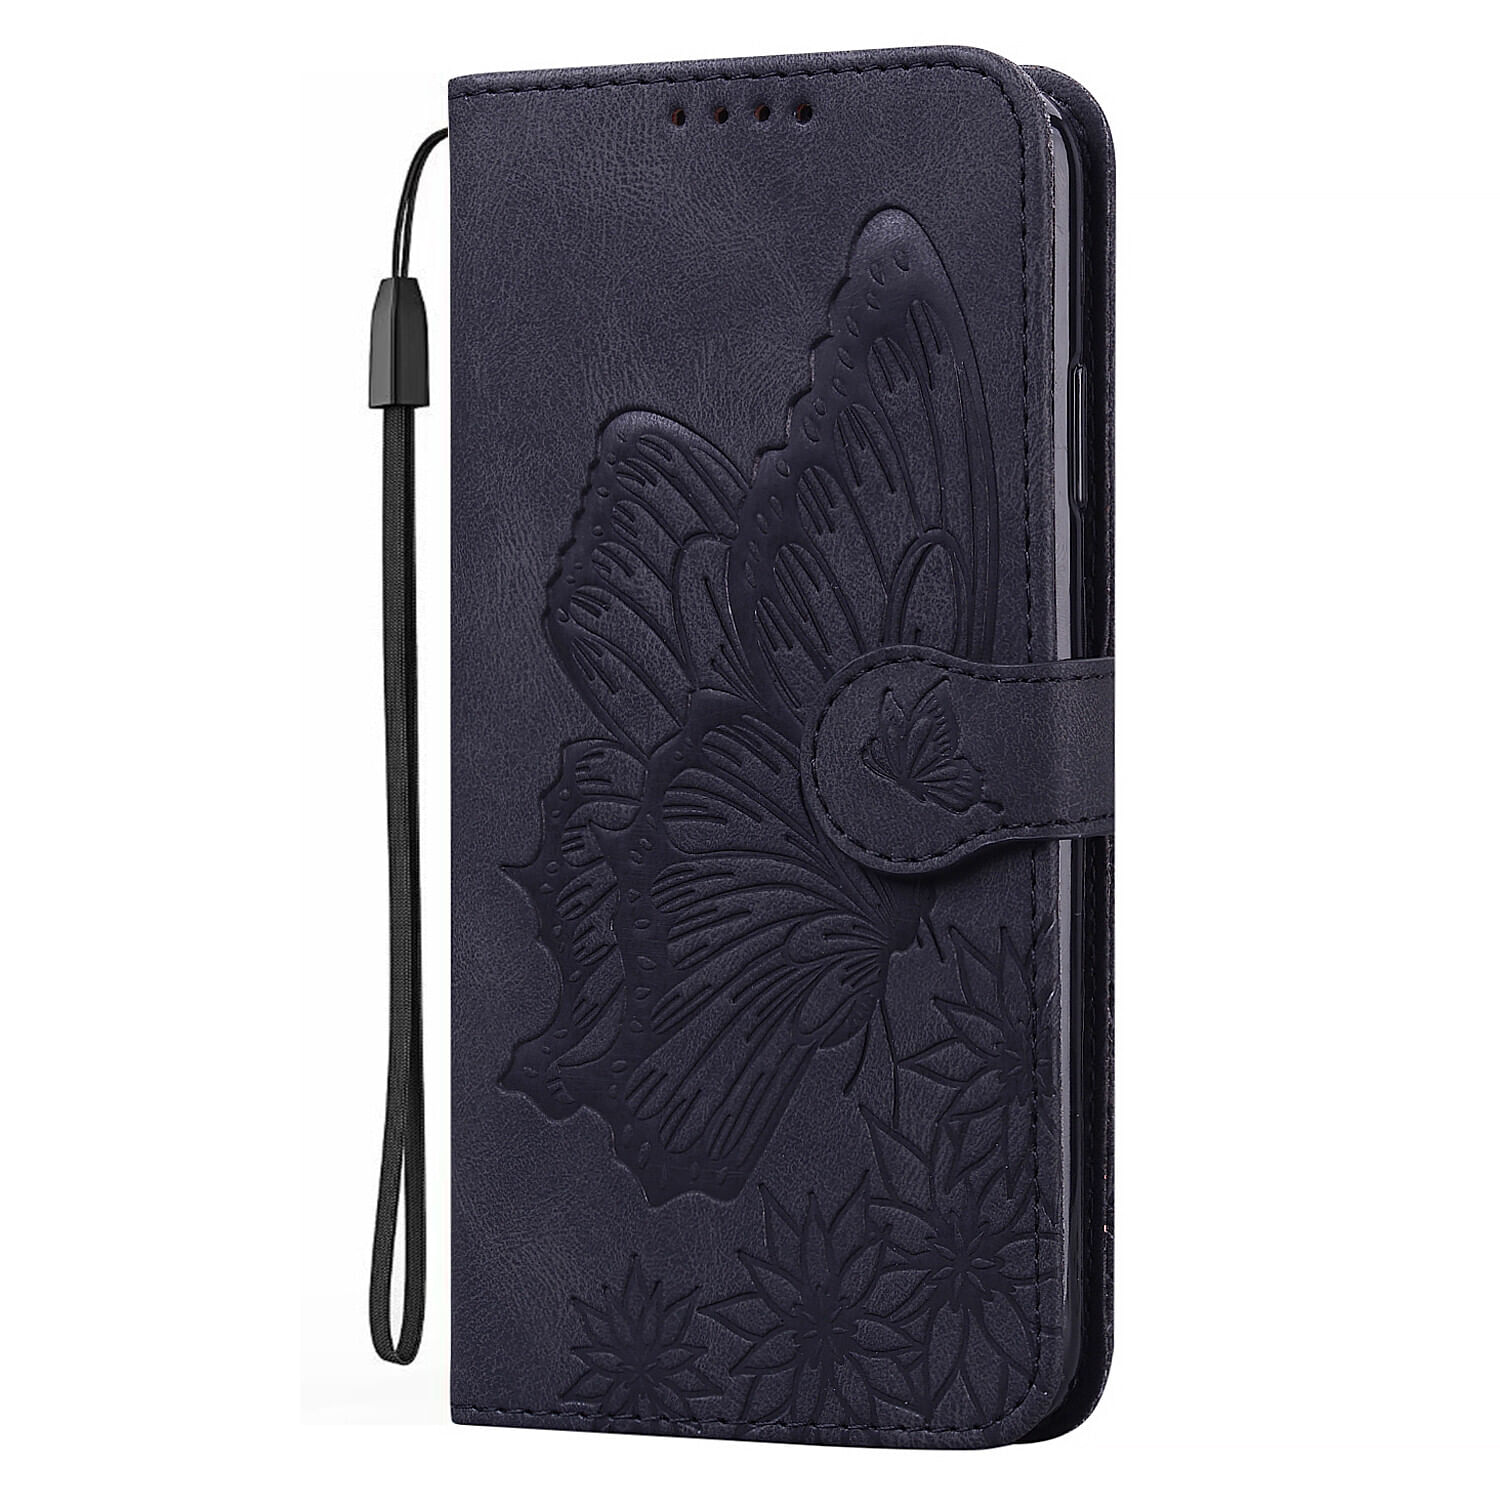 Caso Para Samsung Galaxy A52s 5g Retro Pu Couro Flip Folio Carteira Em Relevo Butterfly Phone Protection Capa À Prova De Choque - Preto